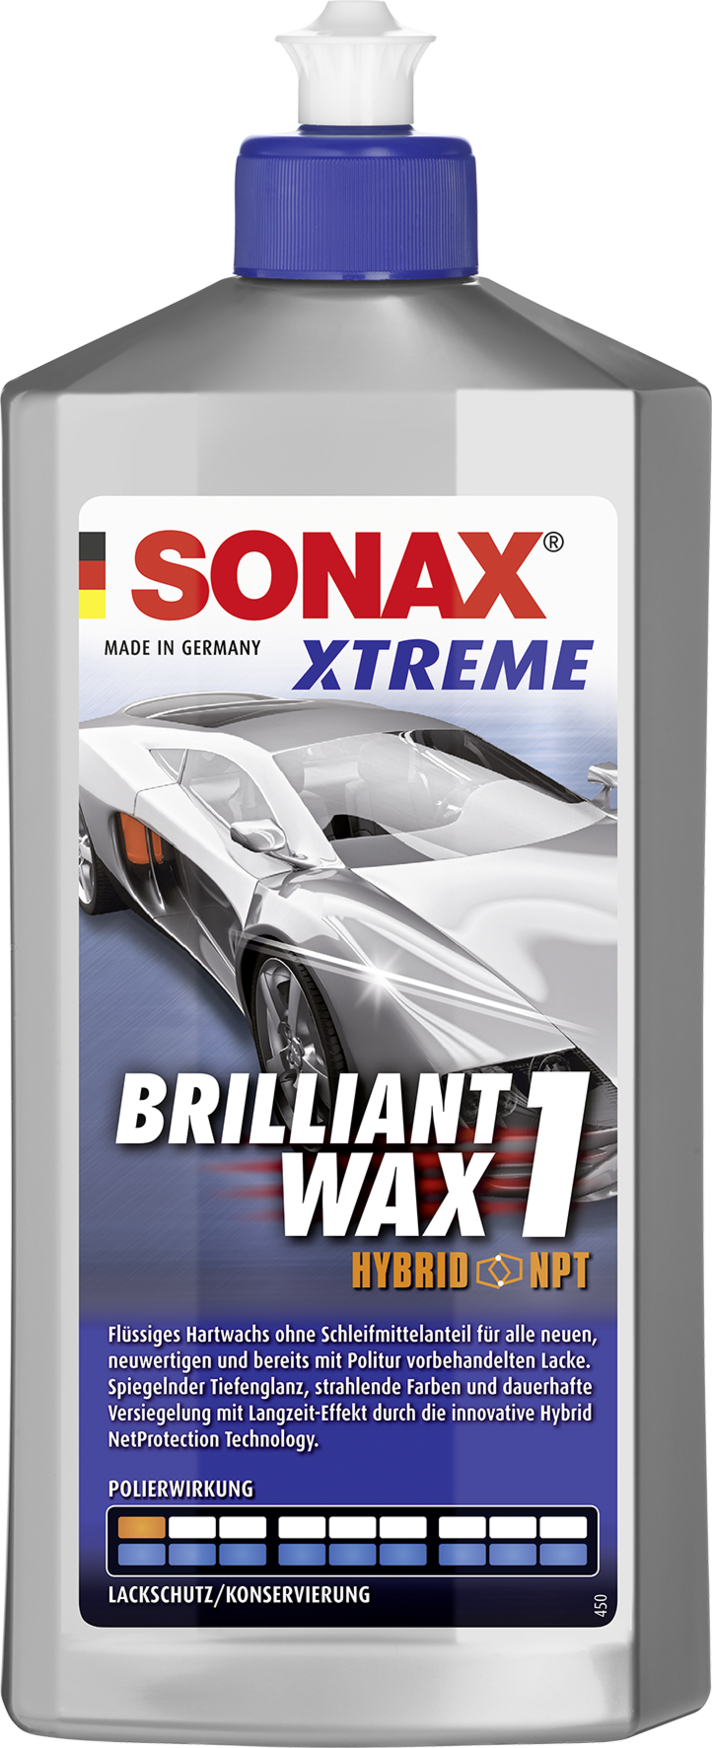 Sonax Xtreme Brillant Wax 1 Hybrid NPT 500ml - Lackpolitur - Außen & Lack -  Pflege & Wartung 